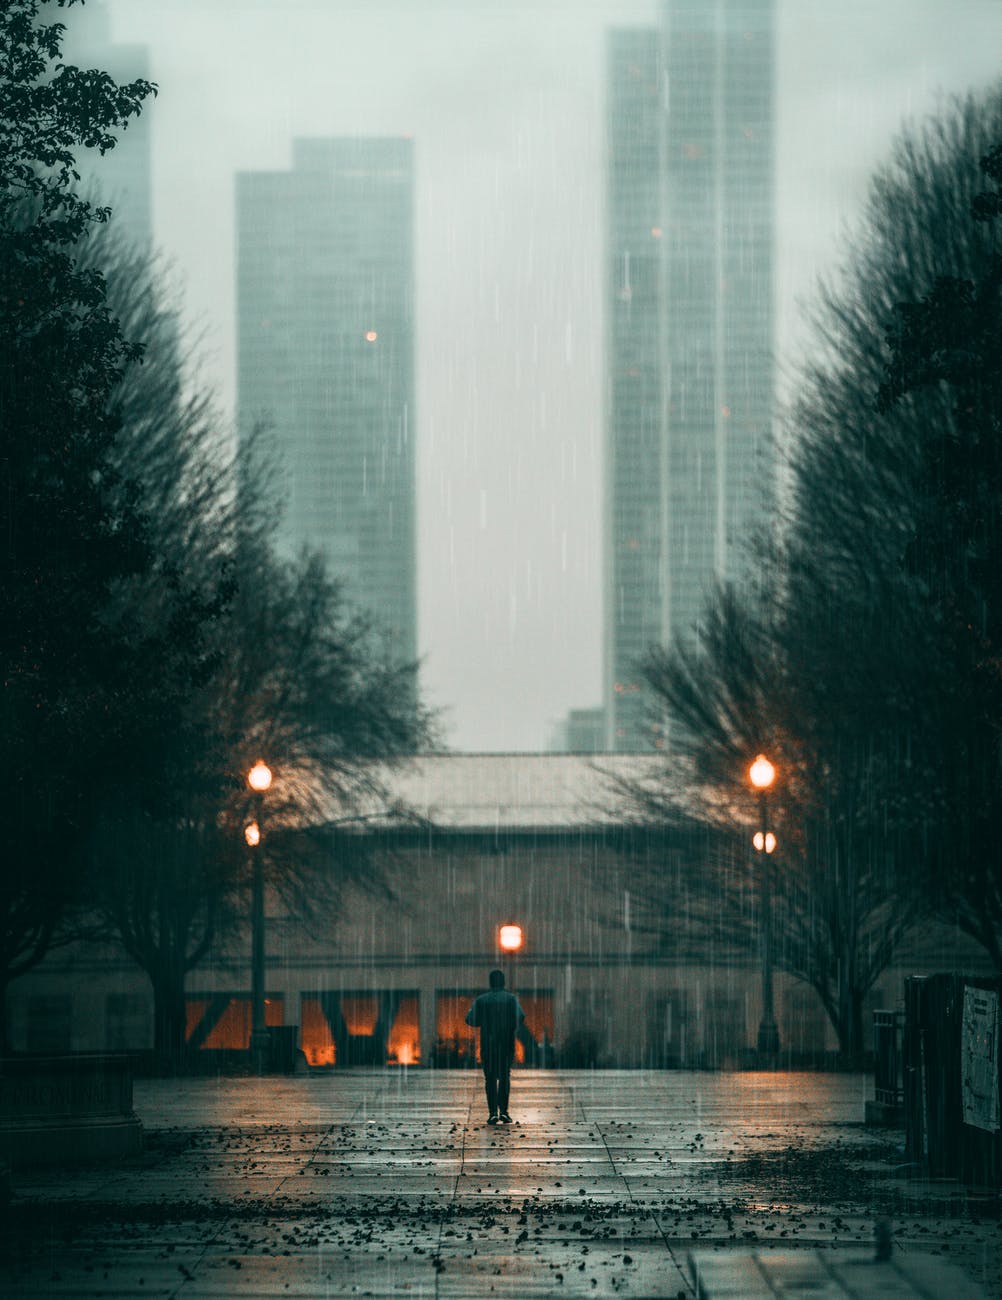 雨が降り肌寒い都会の様子